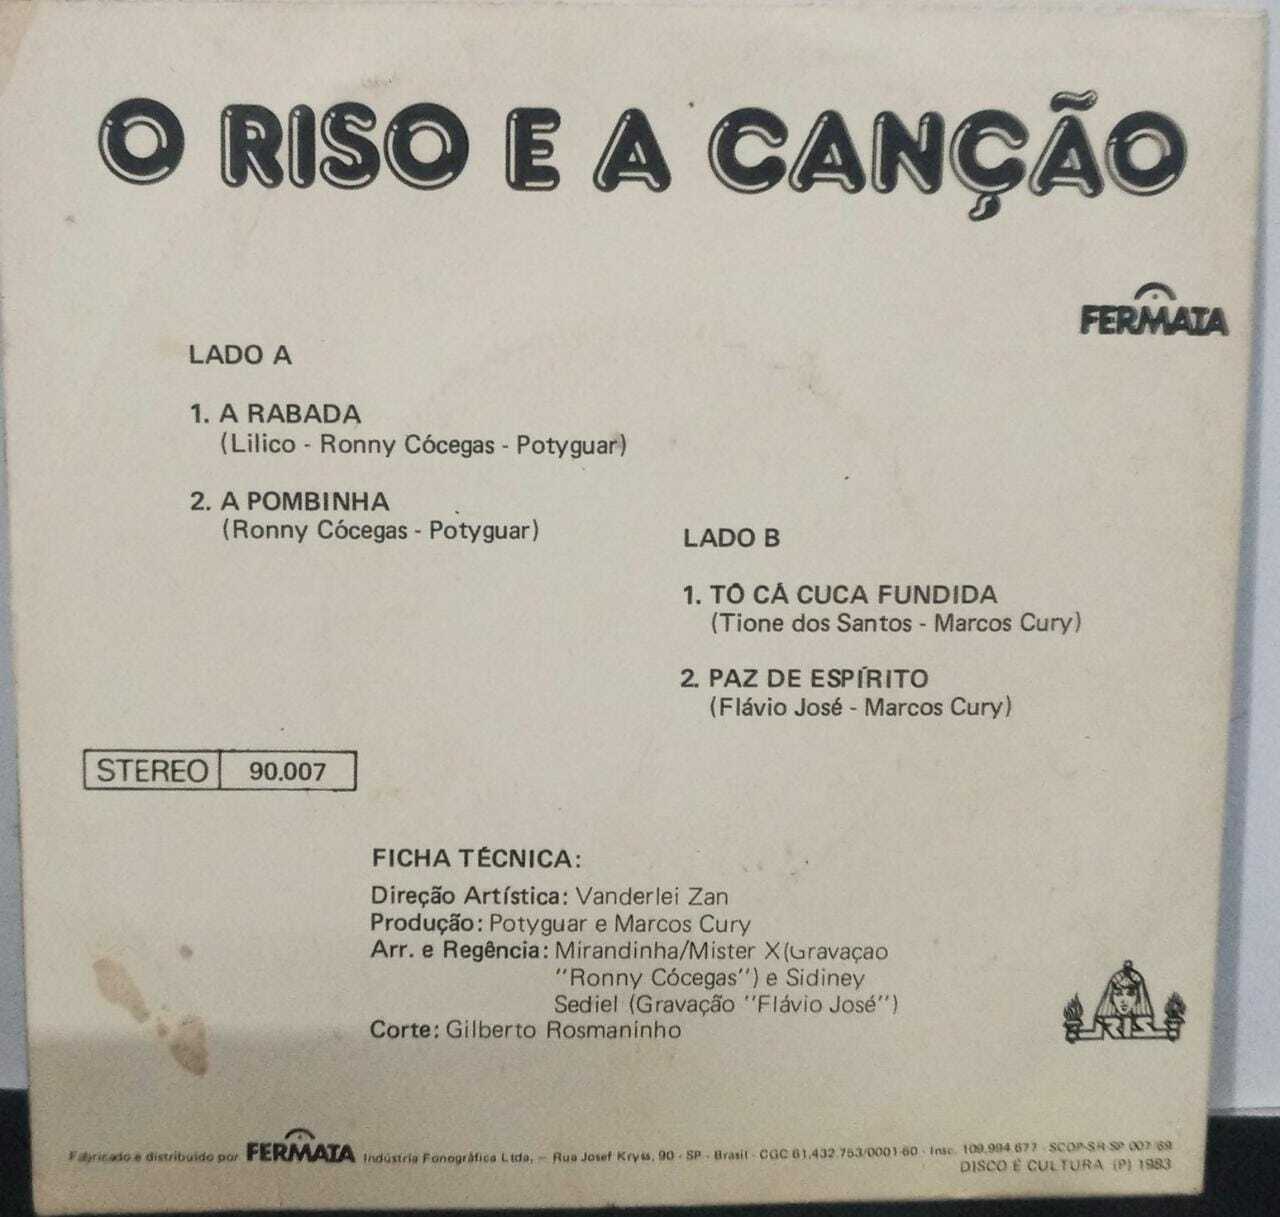 Vinil Compacto - Ronny Cócegas e Flavio José - O Riso e a Canção